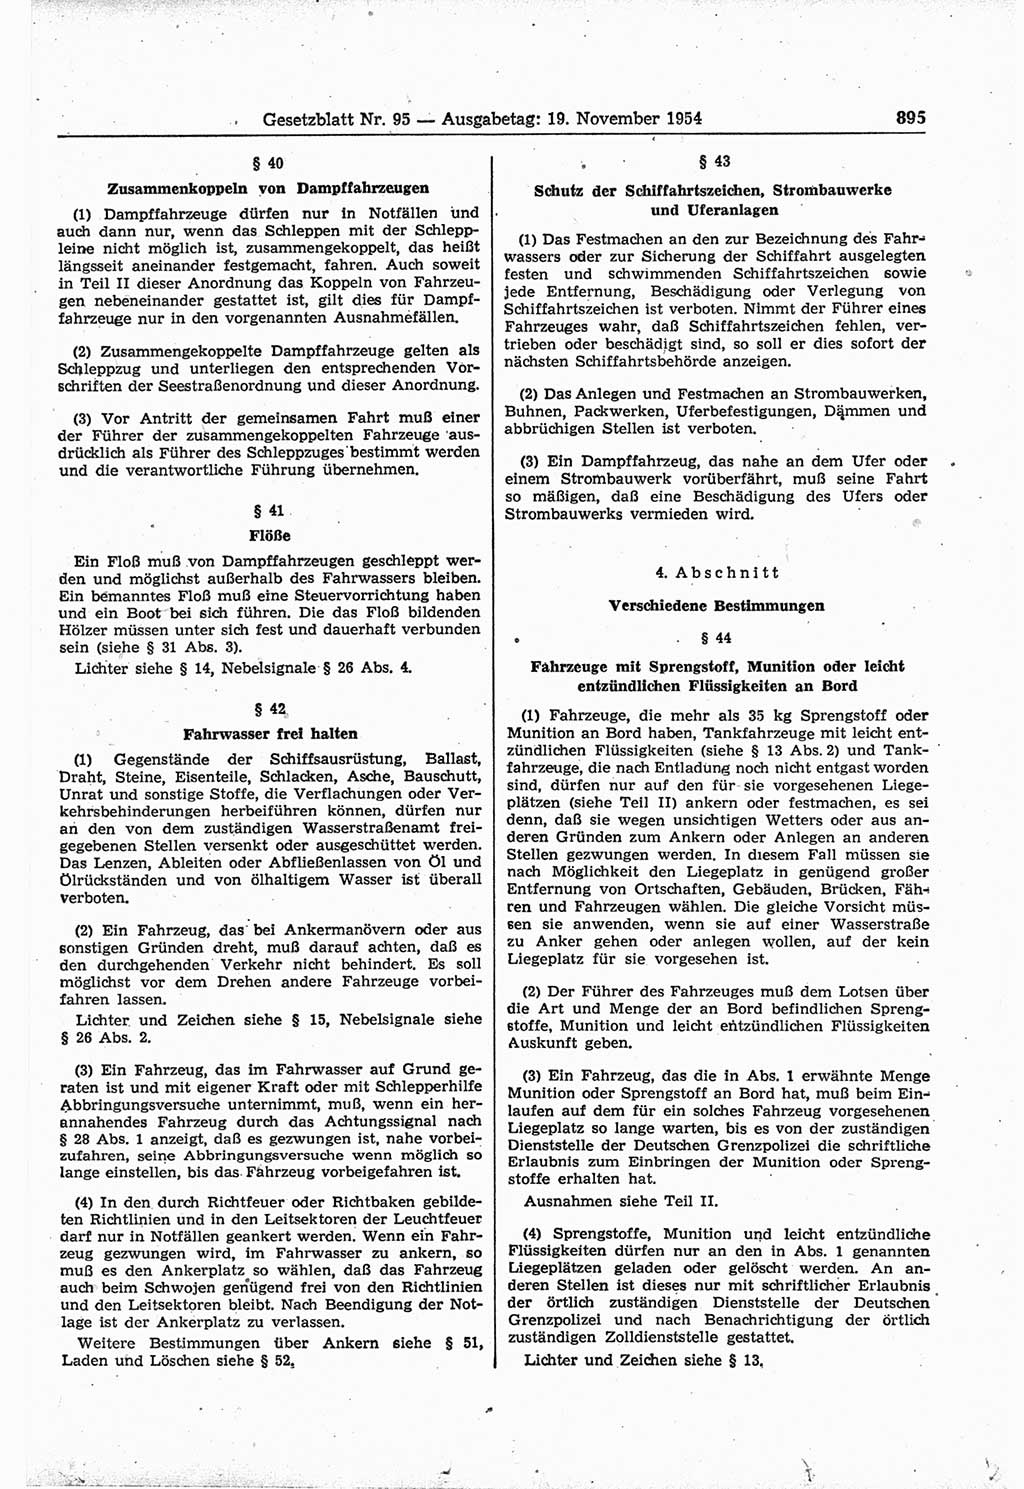 Gesetzblatt (GBl.) der Deutschen Demokratischen Republik (DDR) 1954, Seite 895 (GBl. DDR 1954, S. 895)